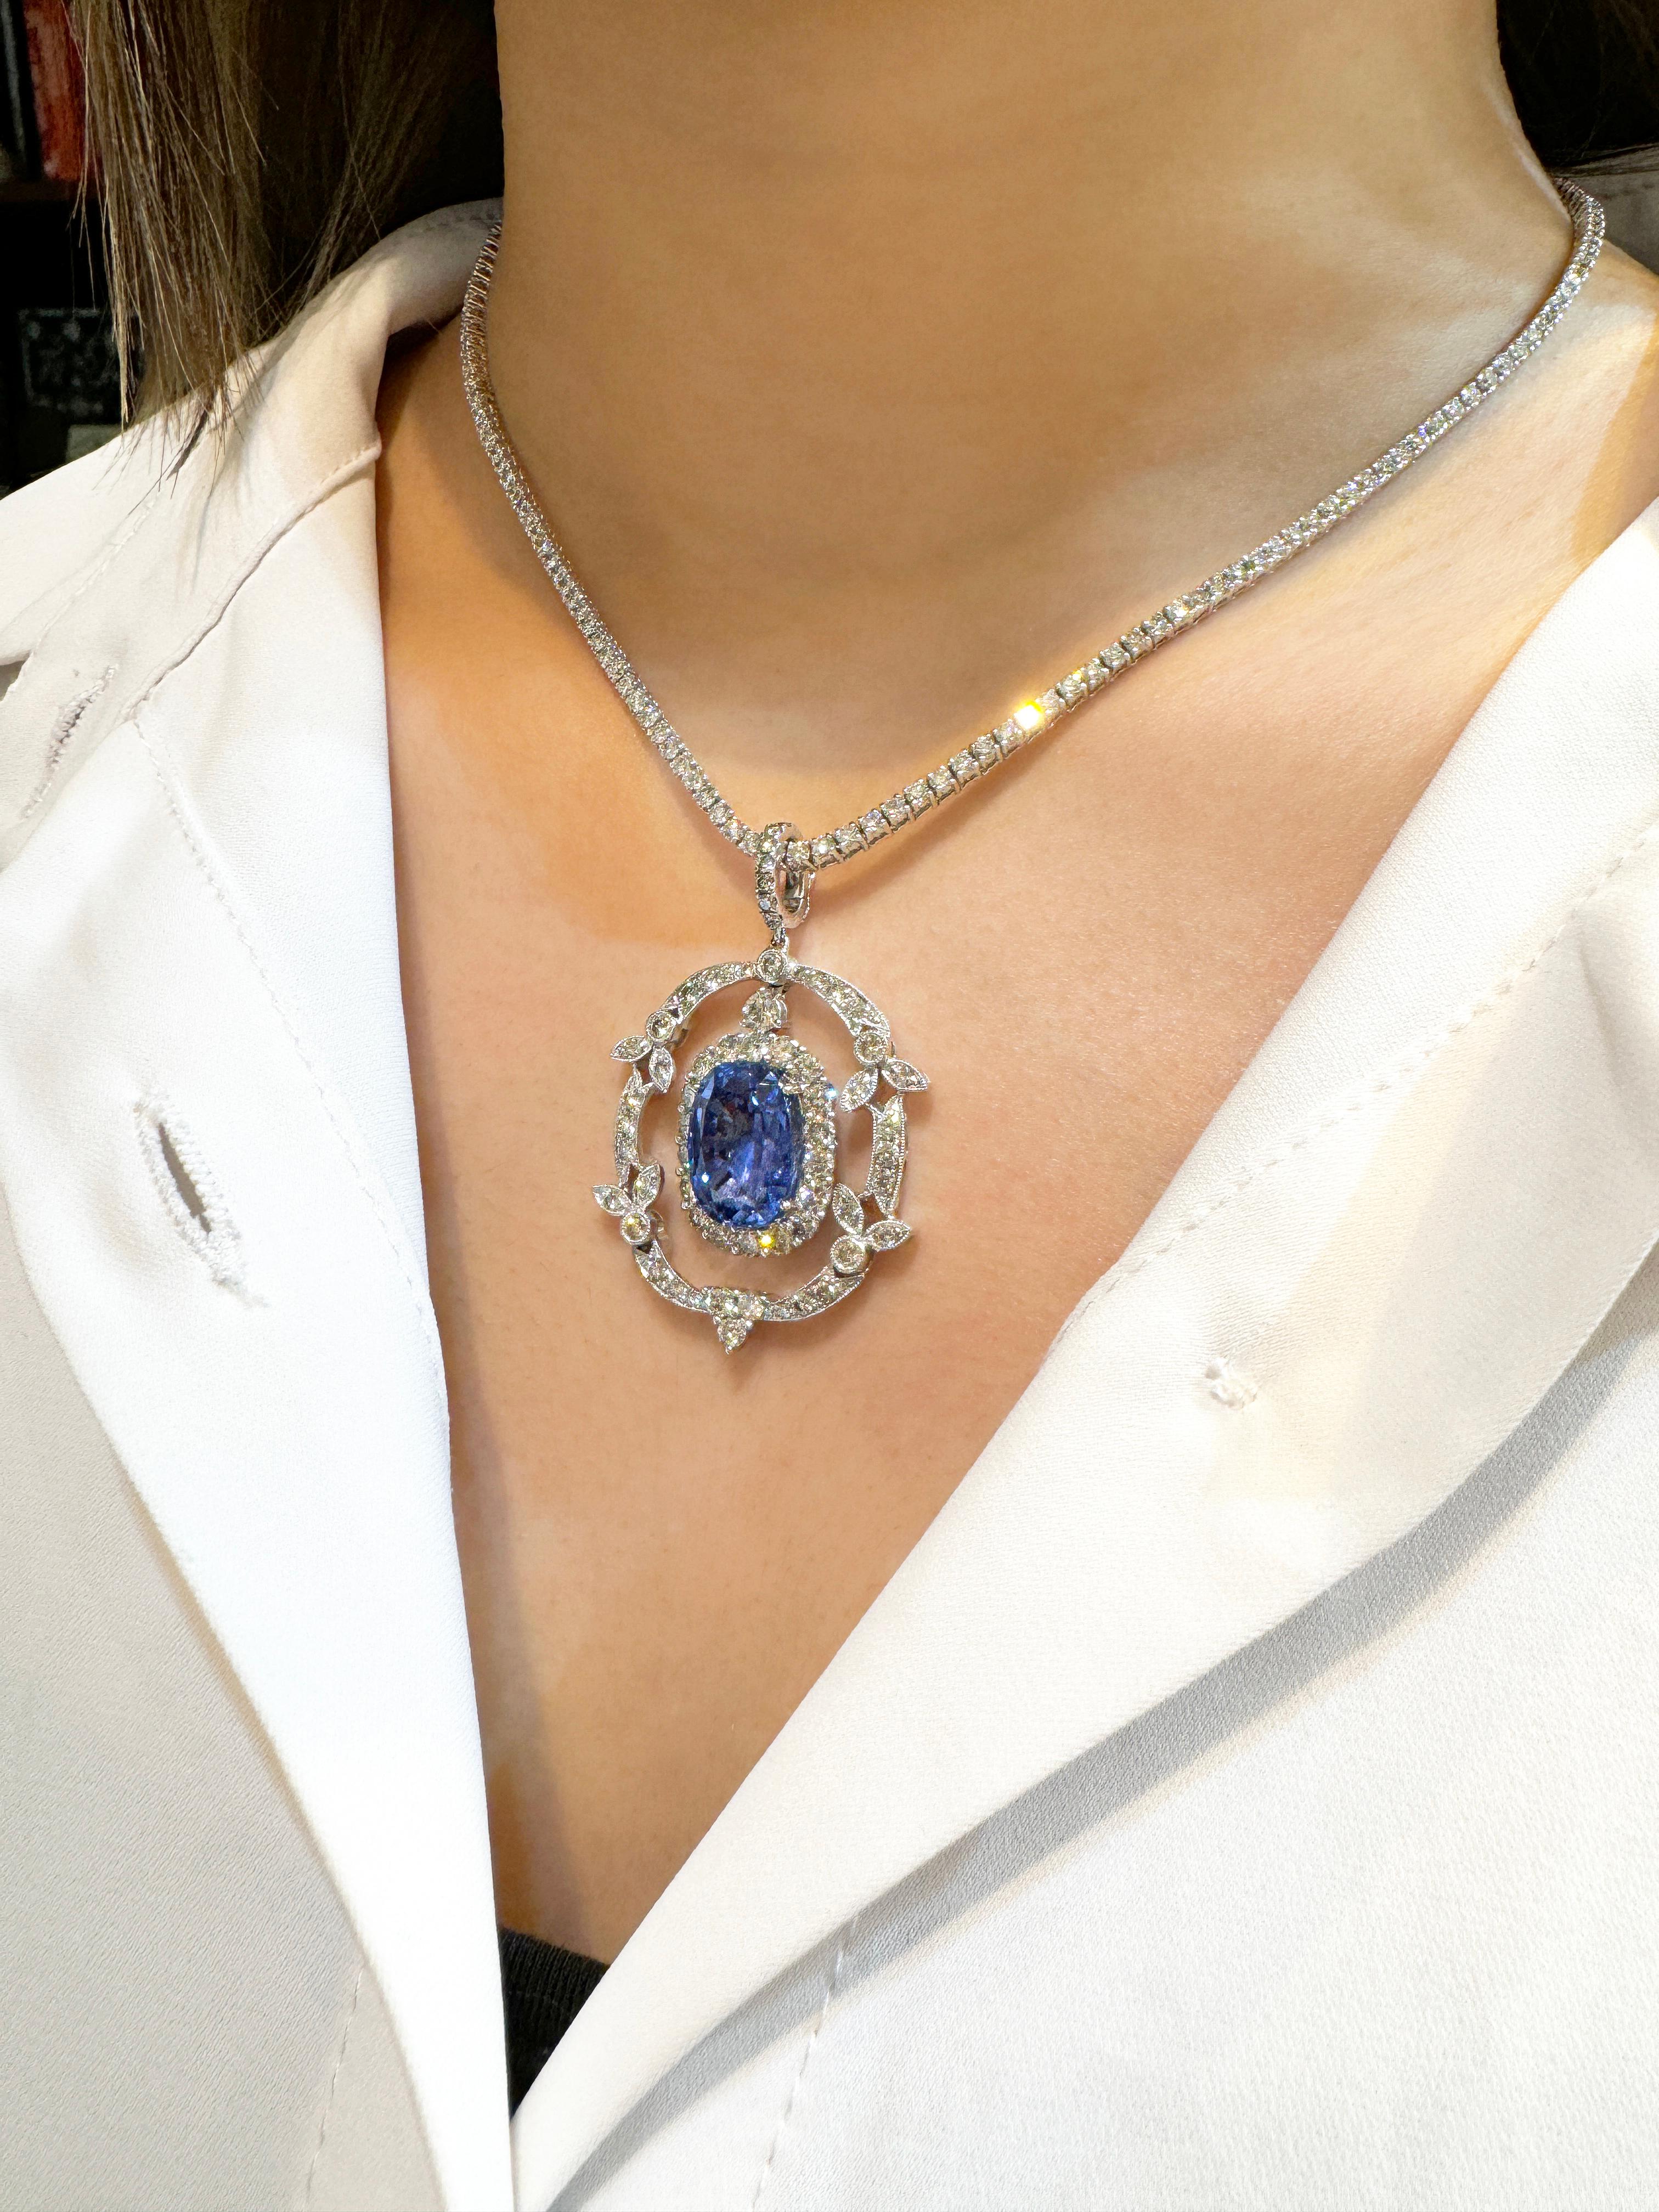 10.36 Carat Oval Cut No Heat Sri Lanka Blue Sapphire Drop Pendant Necklace For Sale 1